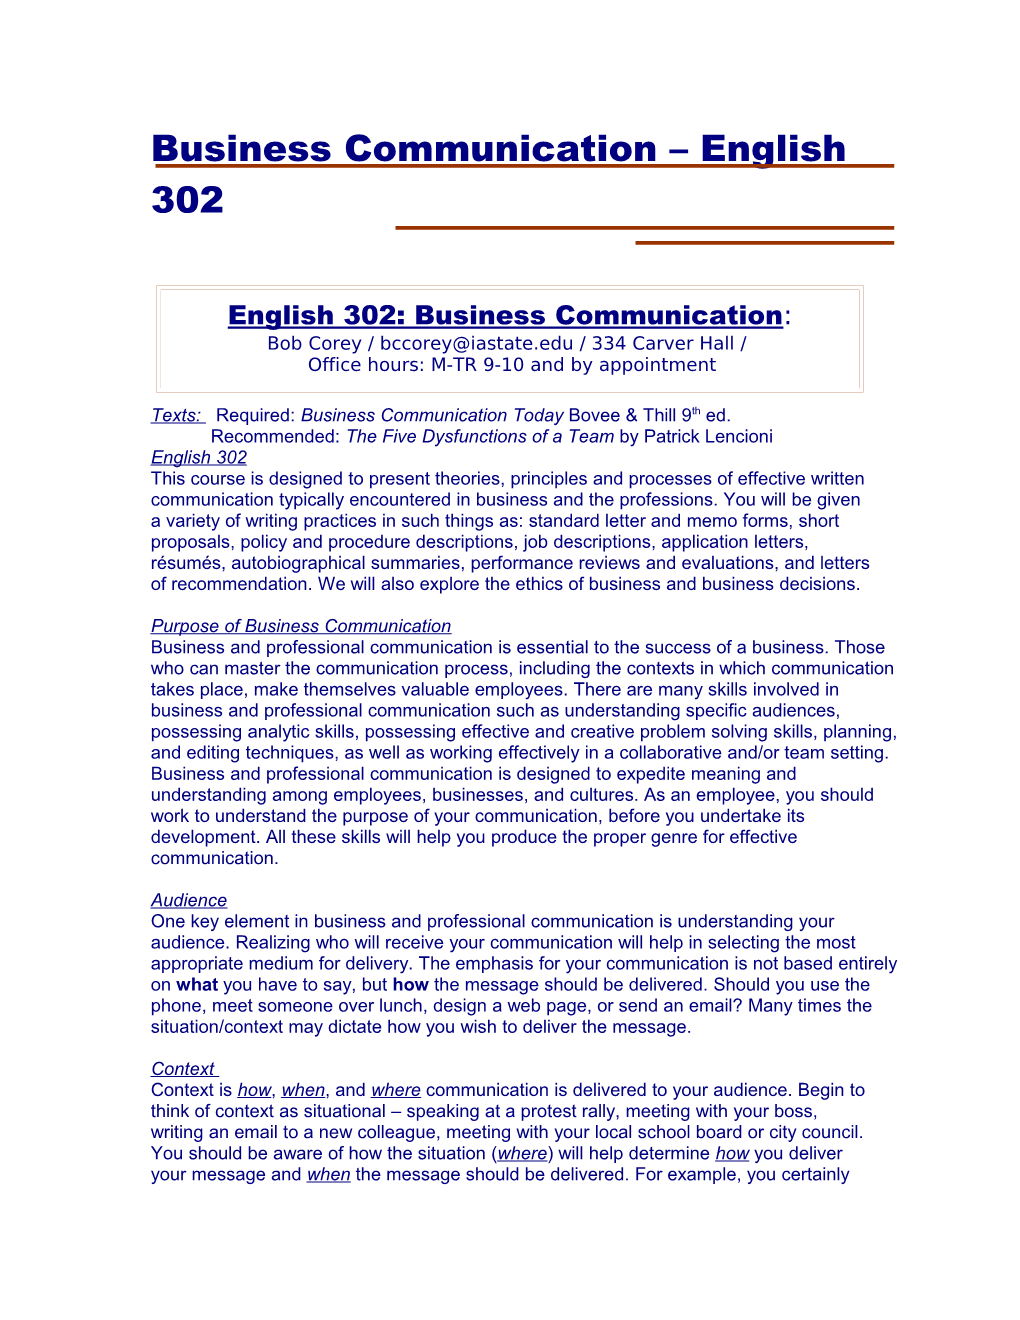 Business Communication English 302